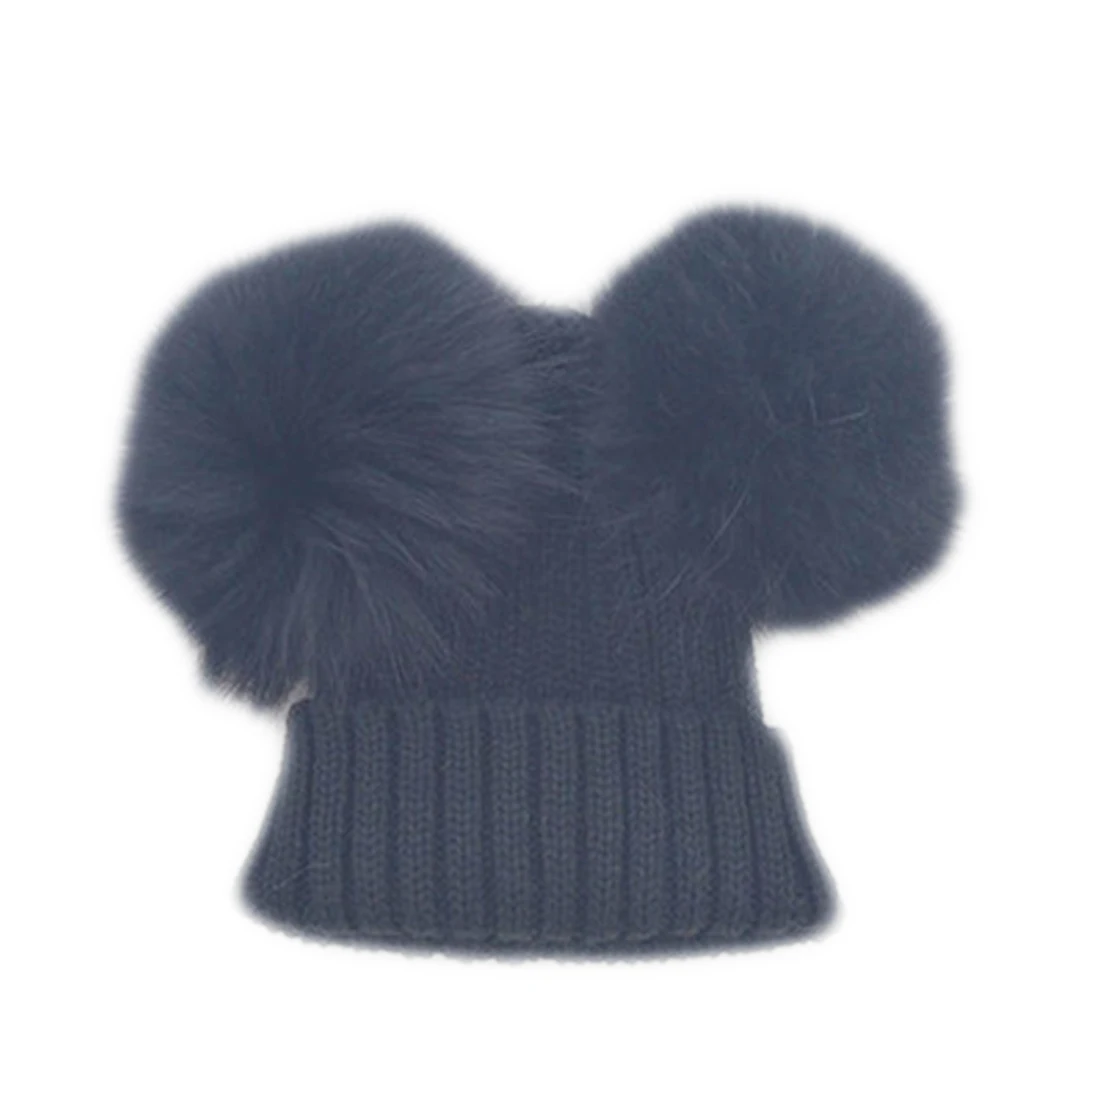 Горячая зимняя вязаная шапка с два меховых помпона из натурального меха, Шапка-бини, детские шапки двойной зимняя шапка из натурального меха с помпоном - Цвет: Черный